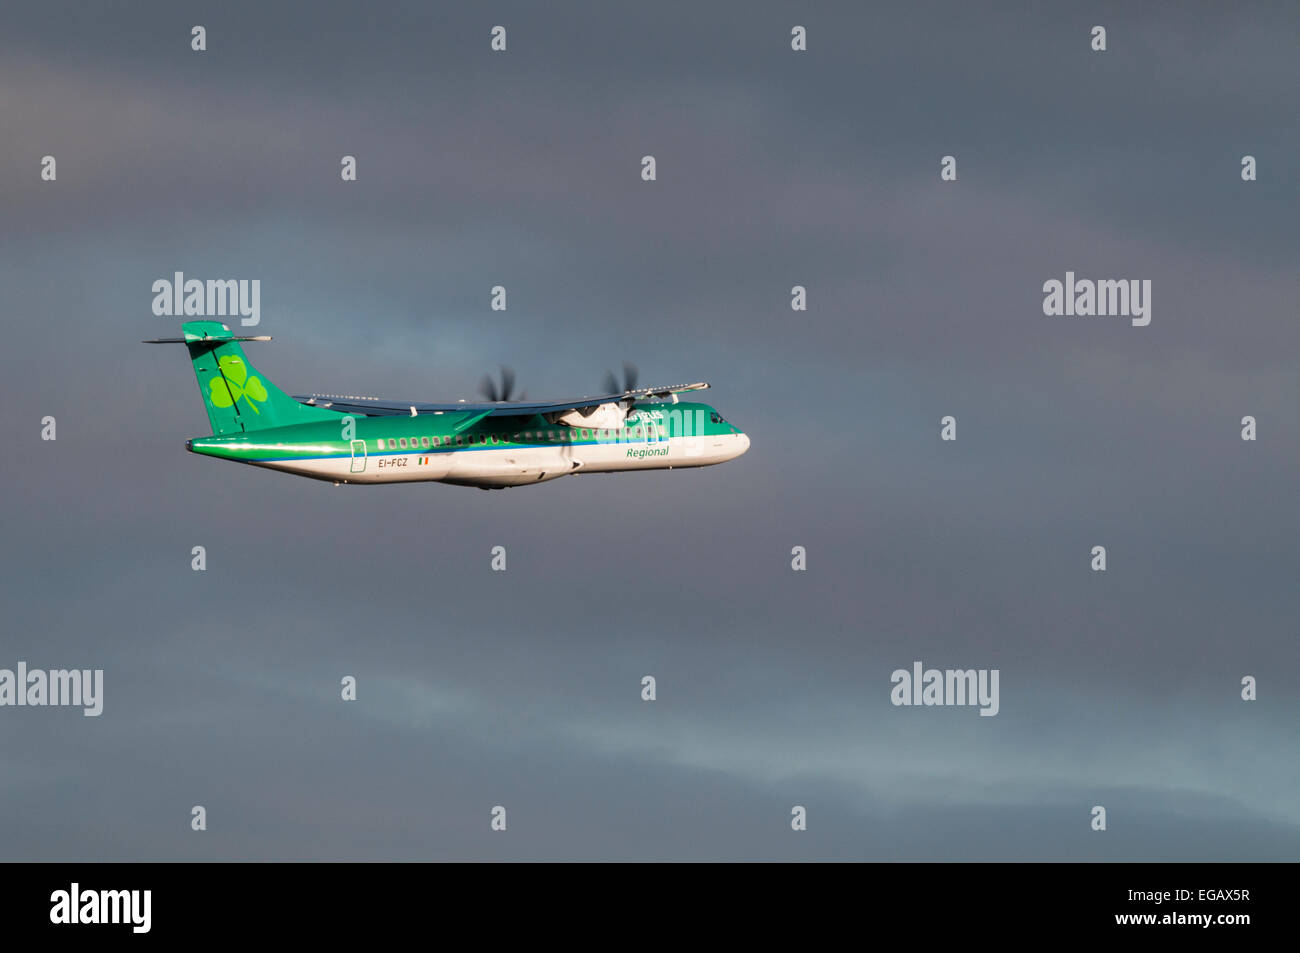 Vue latérale d'un Aer Lingus Regional ATR 42 Avion au décollage Banque D'Images